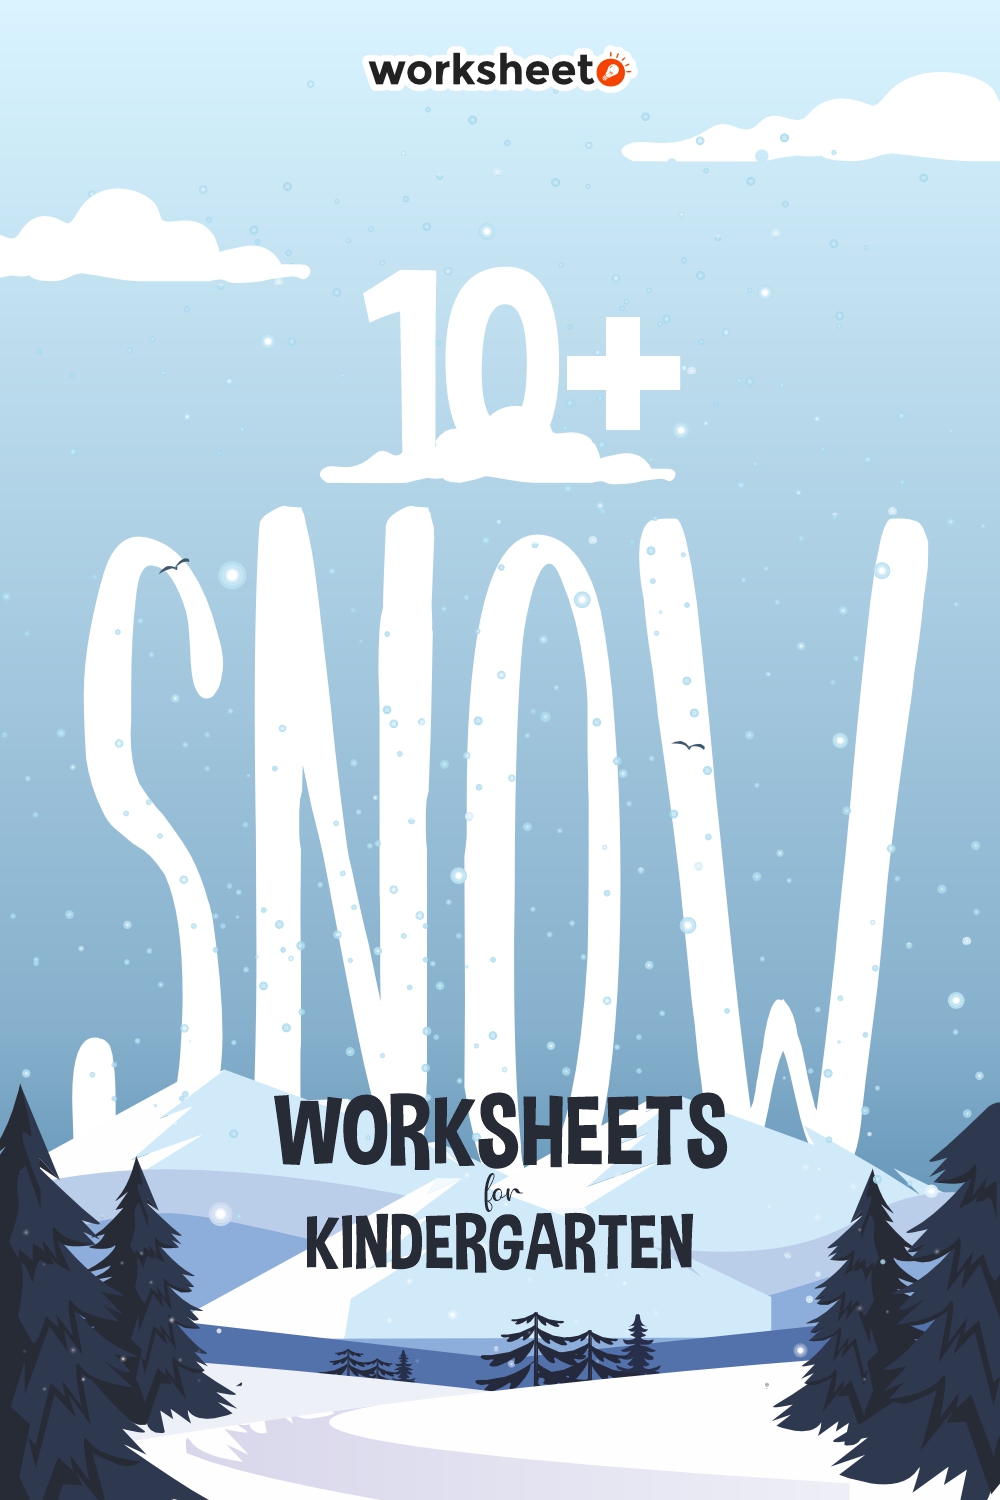 15 Images of Snow Worksheets For Kindergarten